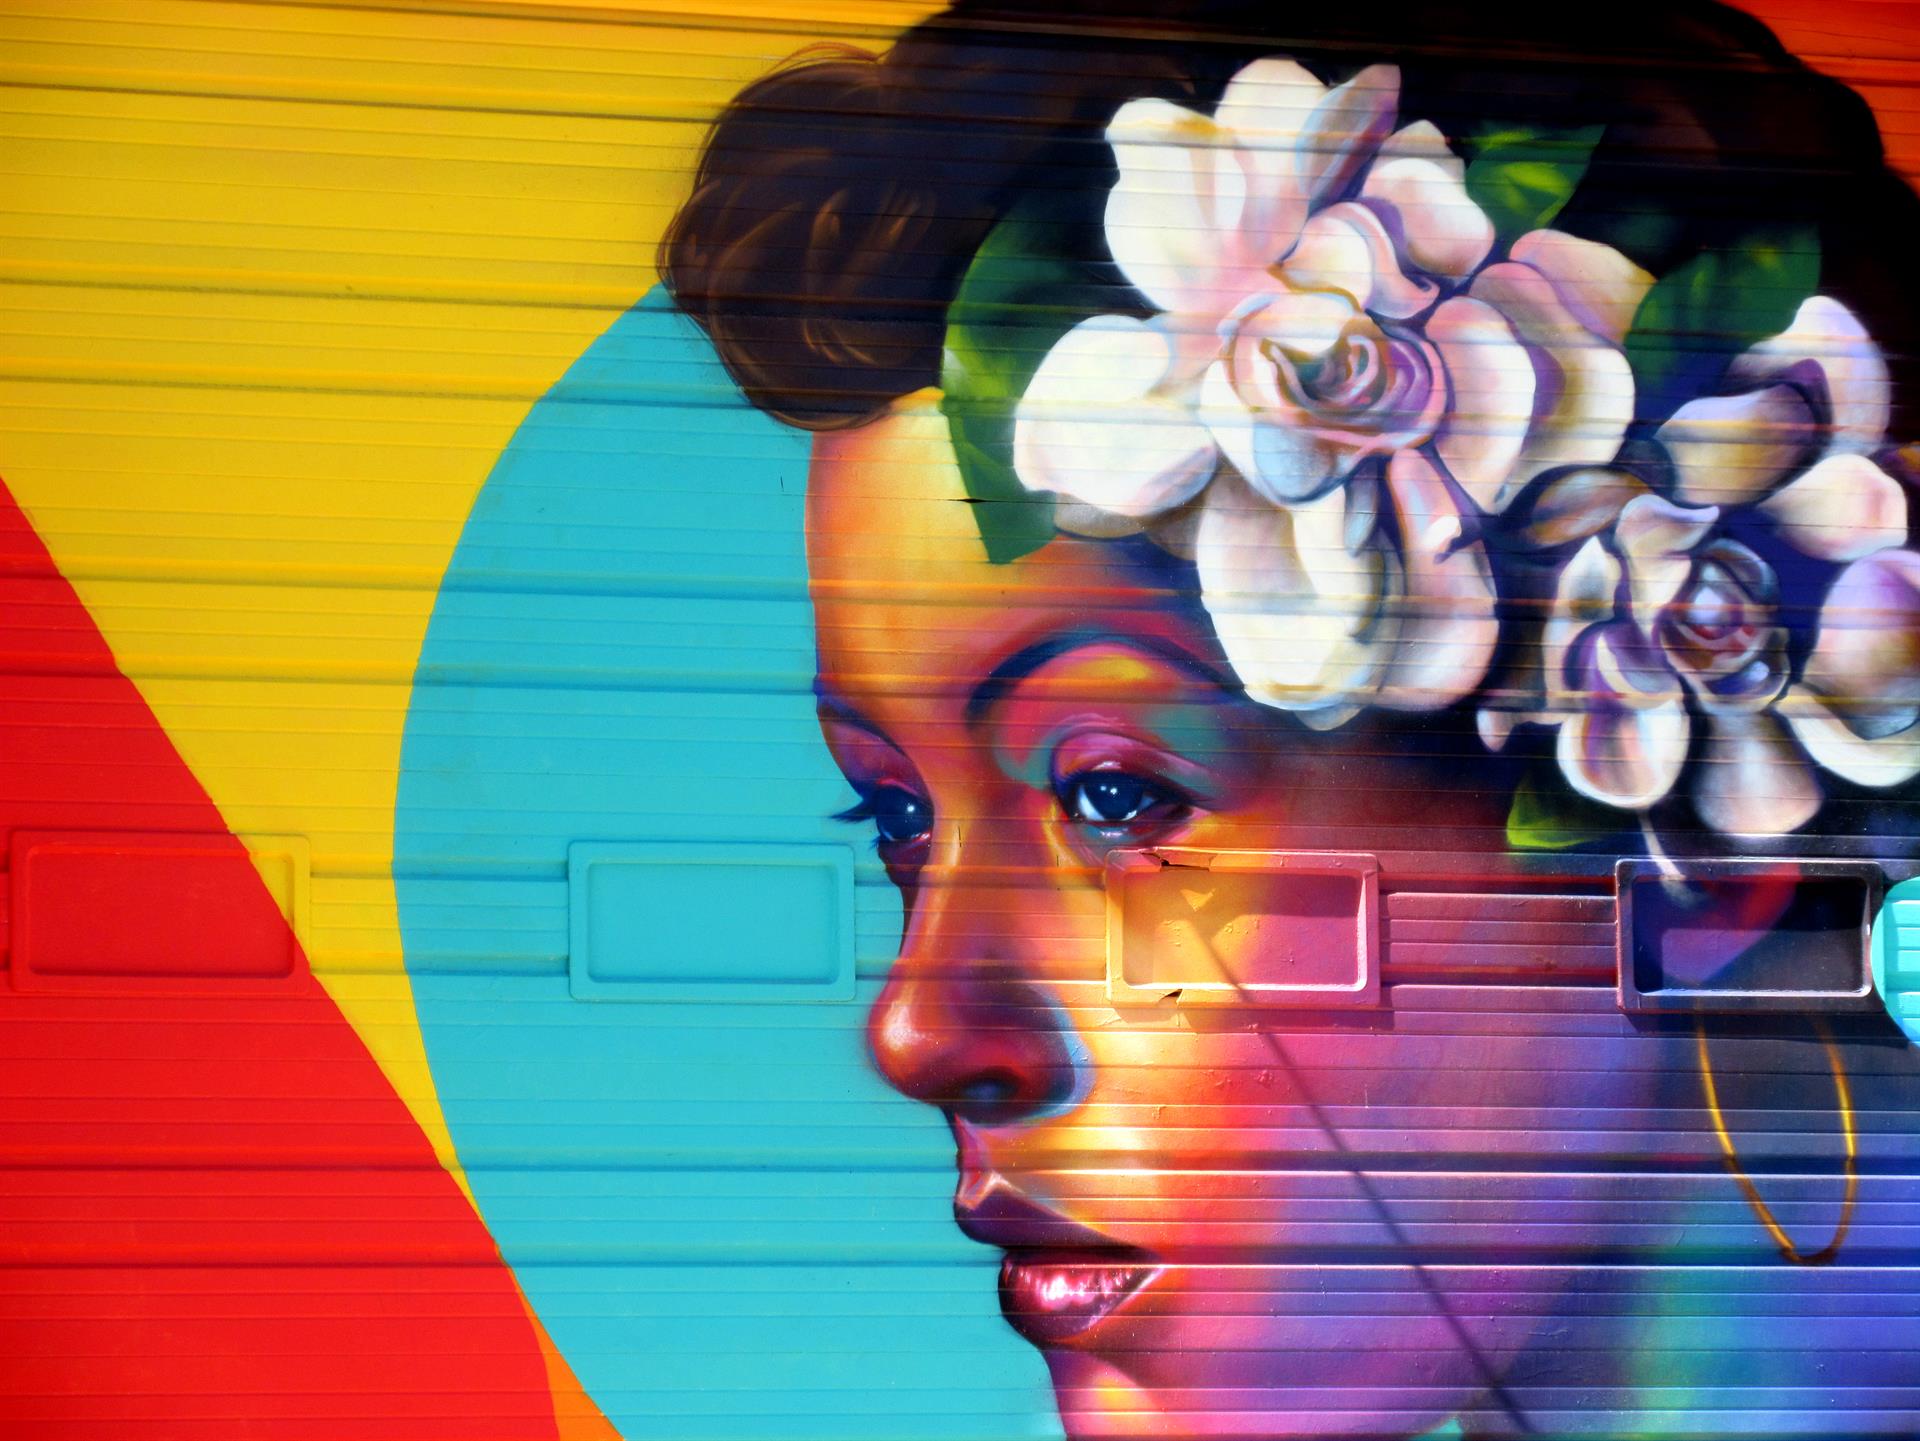 Vista de un detalle del mural realizado por Carmen Richards en colaboración con el colectivo de artistas Detour 303 que exhibe la presencia afroamericana y afrolatina en el barrio Five Points pintado en una pared del Denver Center Market en el norte del centro de Denver en Colorado. EFE/Francisco E. Miraval
